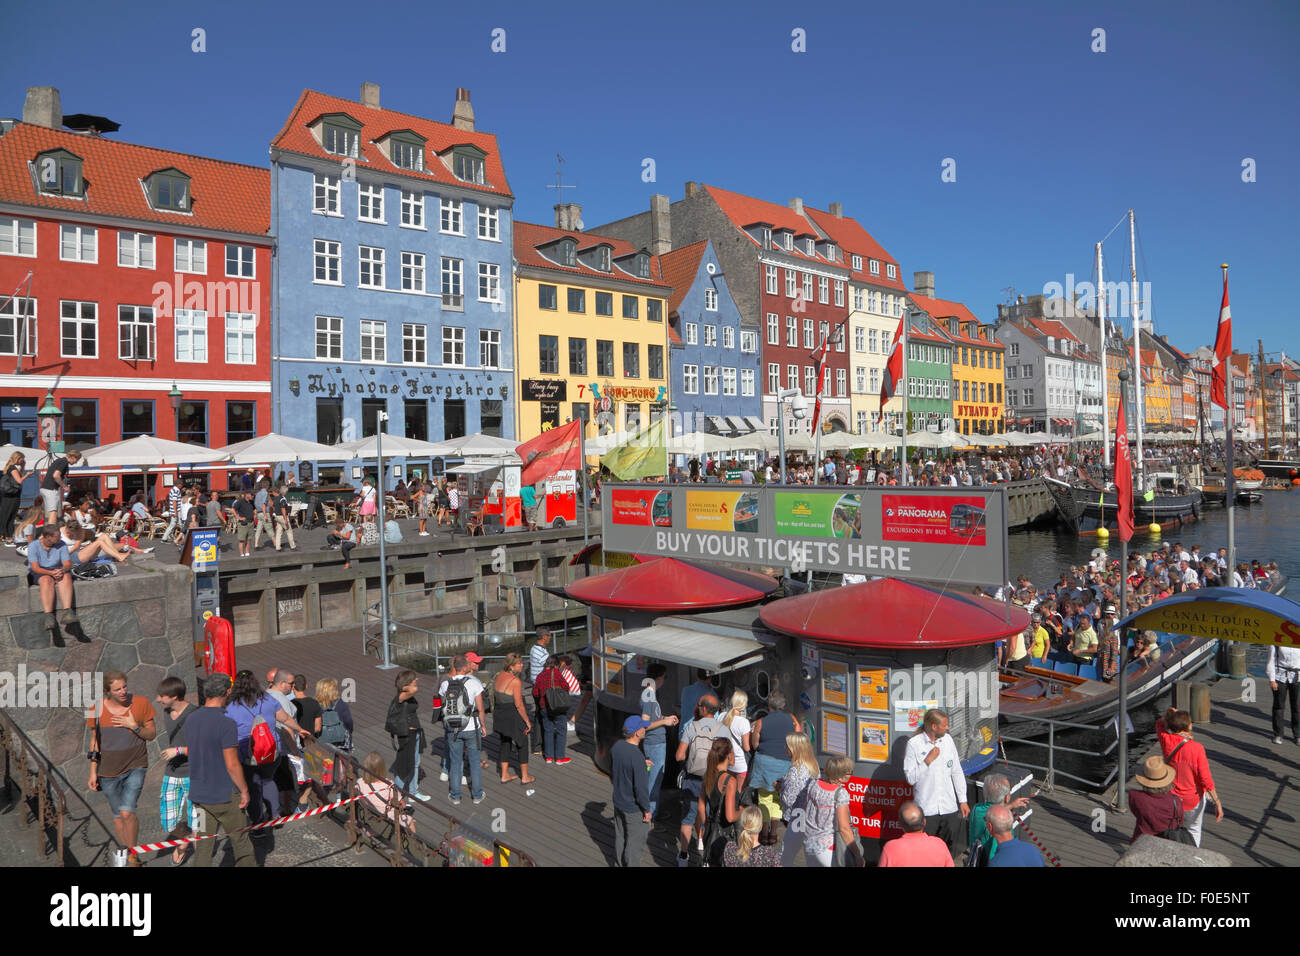 Nyhavn voll von überfüllten Kanal tour Boote und Leute an der Wasserseite und Straßencafés Restaurants auf einem sehr est, Smf beschäftigten Sommer Tag. Stockfoto